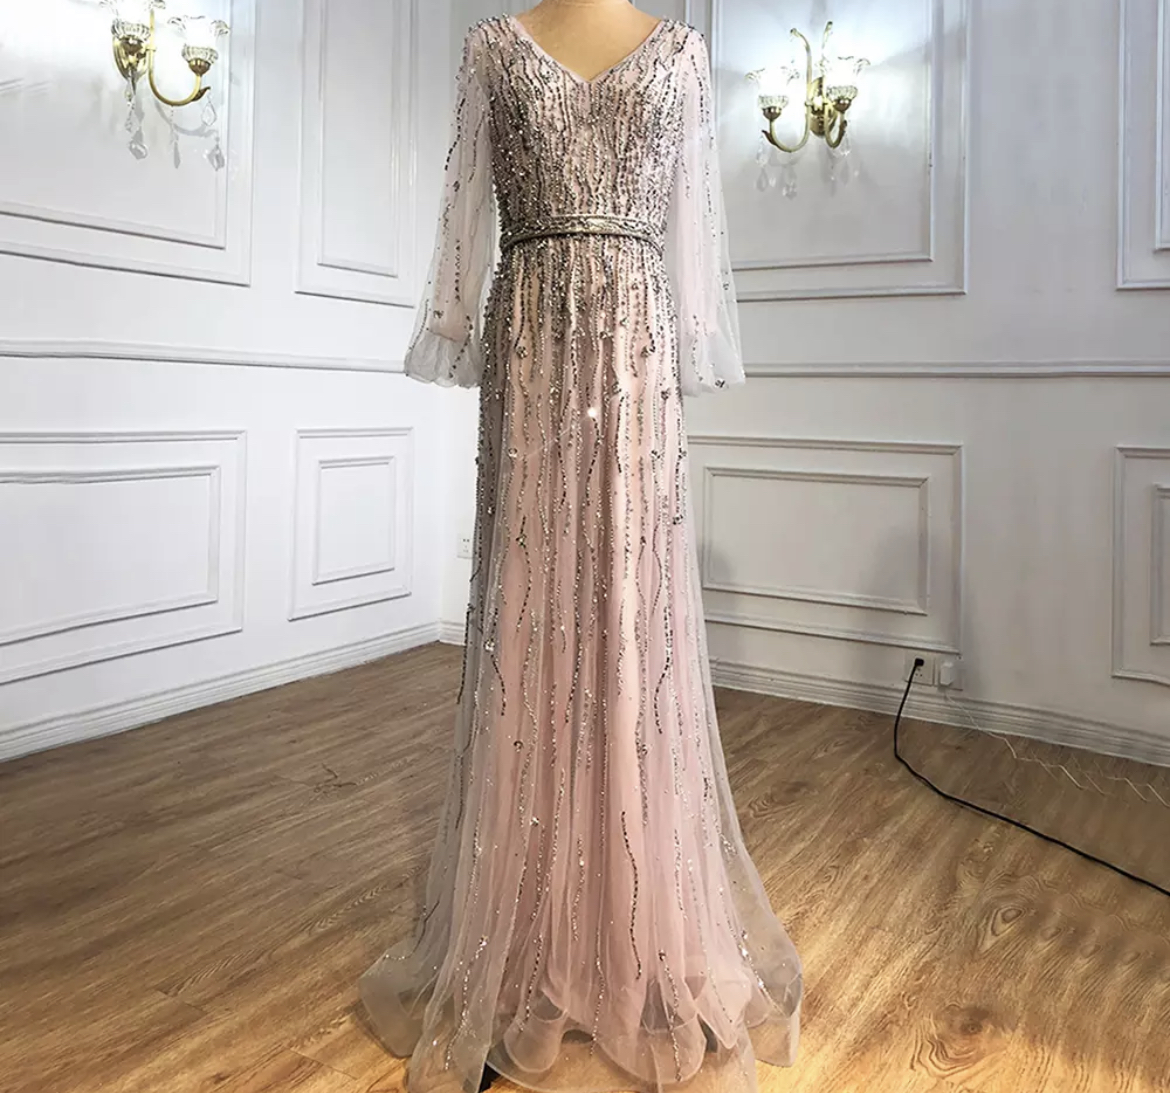 Esteles London - Exclusive Dresses & Gowns in London